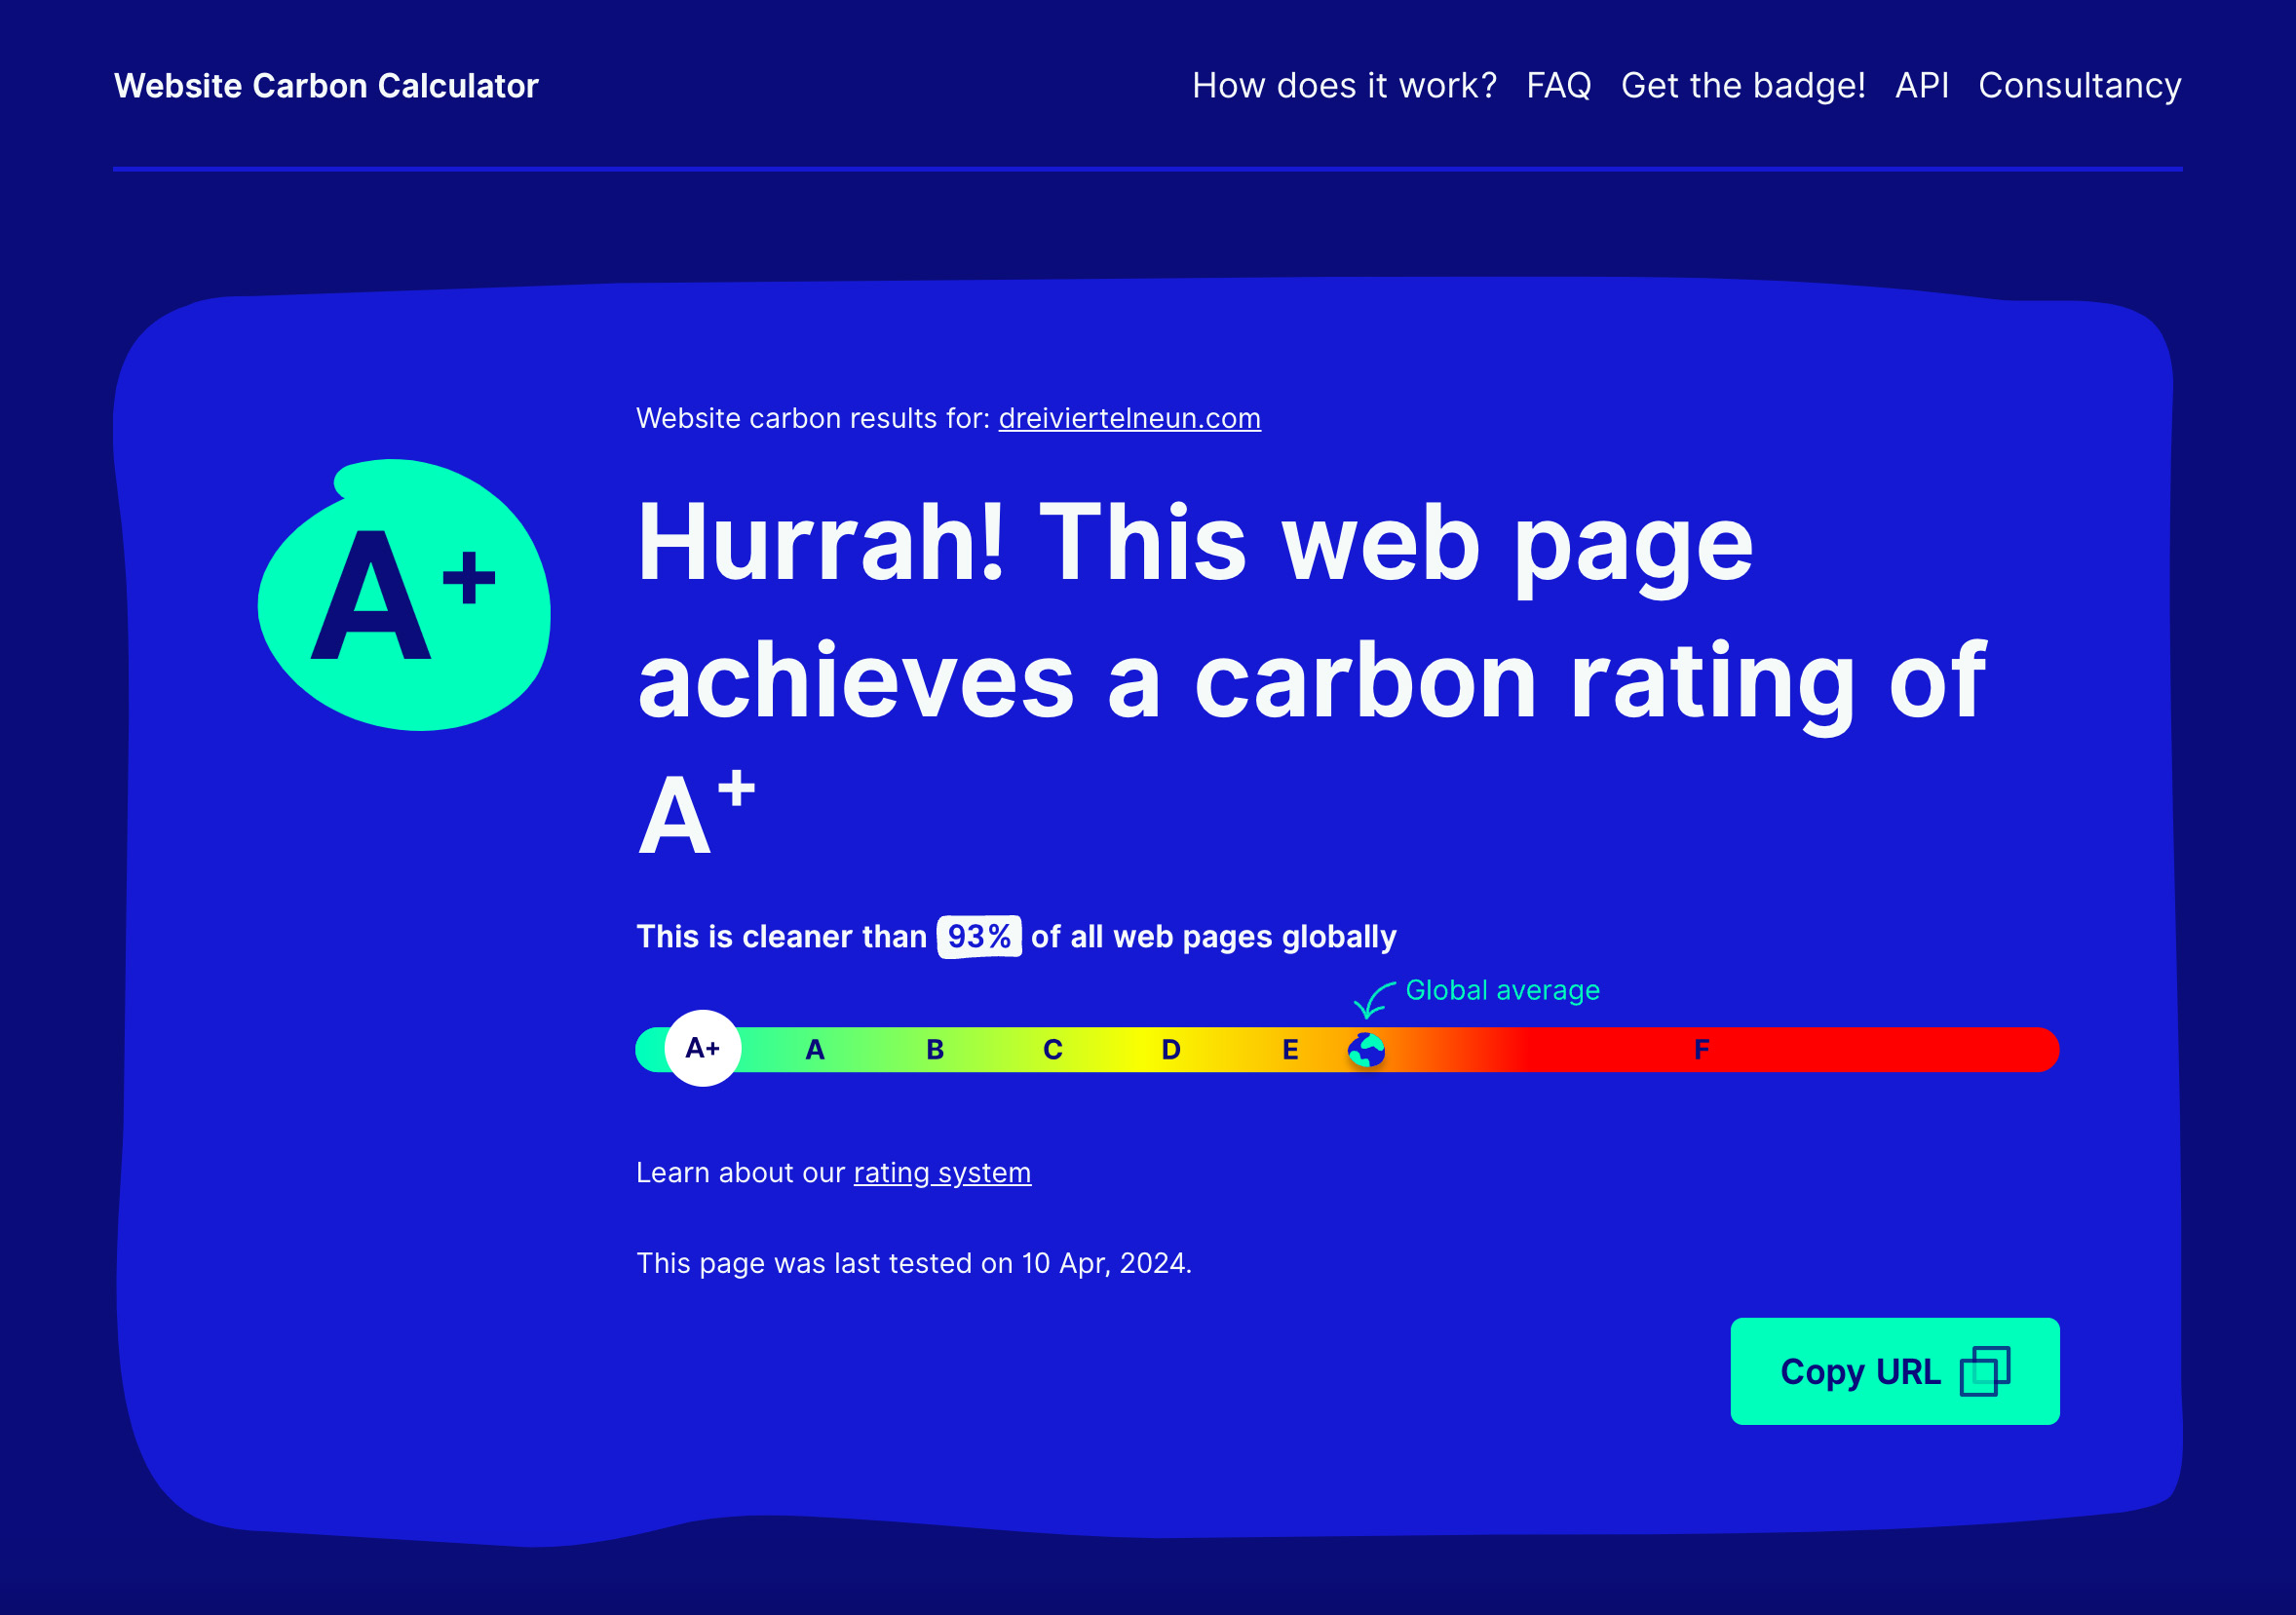 Diese Website erreicht lt. Website Carbon Calculator eine Bewertung A+ und ist somit grüner als 93 % aller Webseiten weltweit.